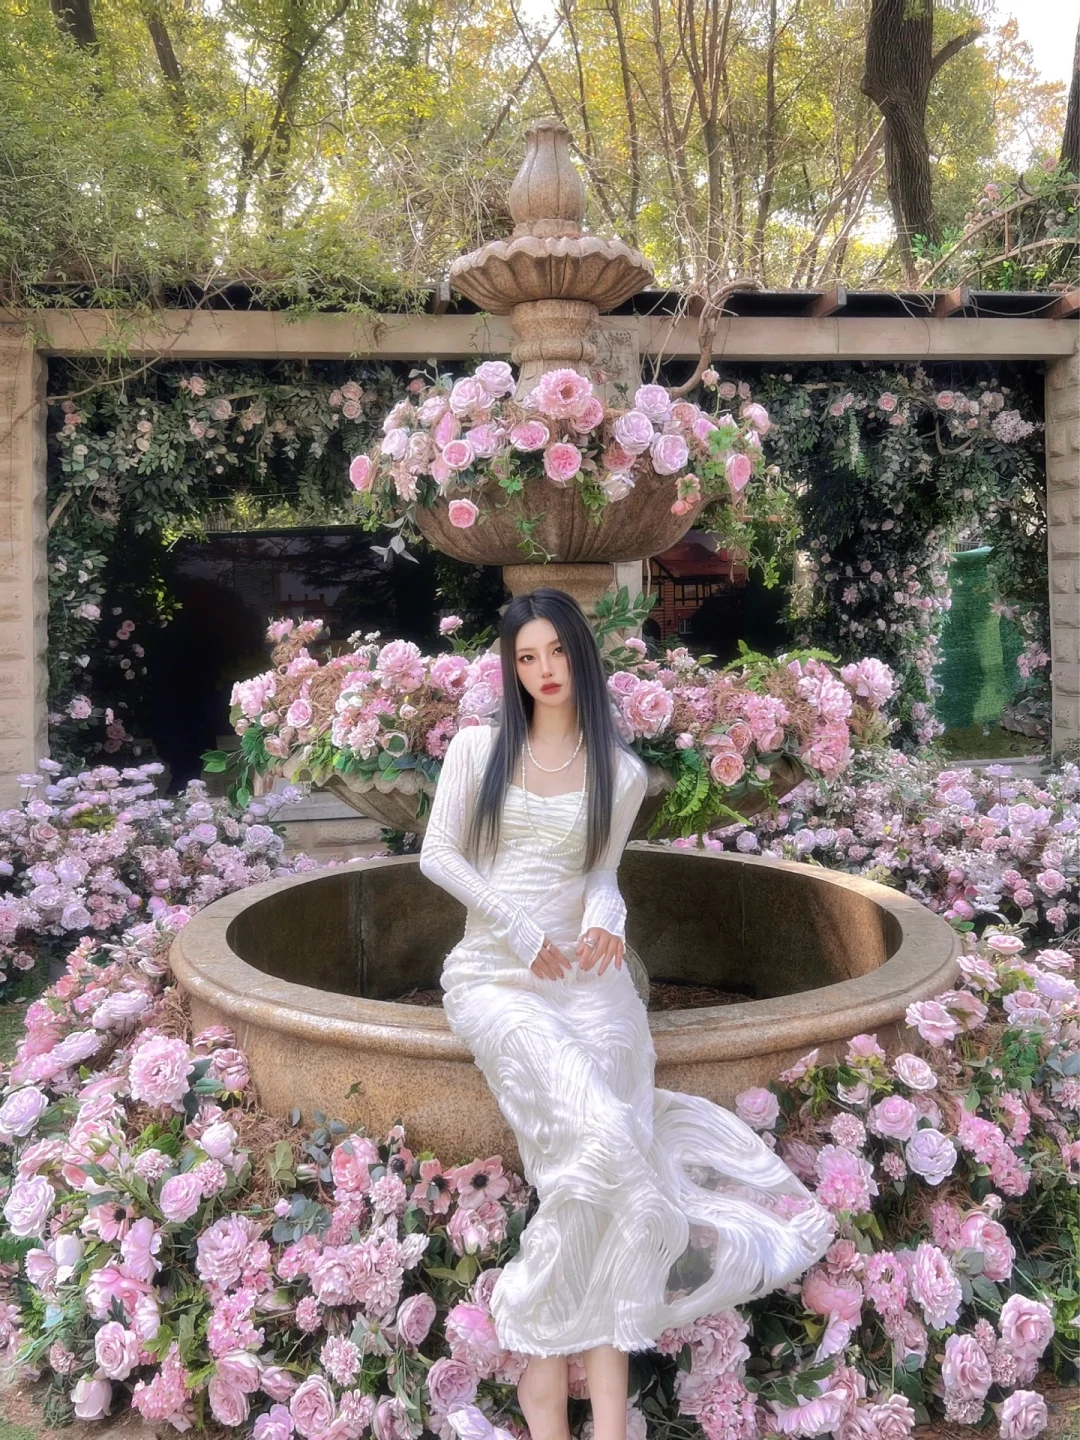 睿cheryl 来上海一定要拍的莫奈花园蔷薇喷泉⛲️ - 小红书